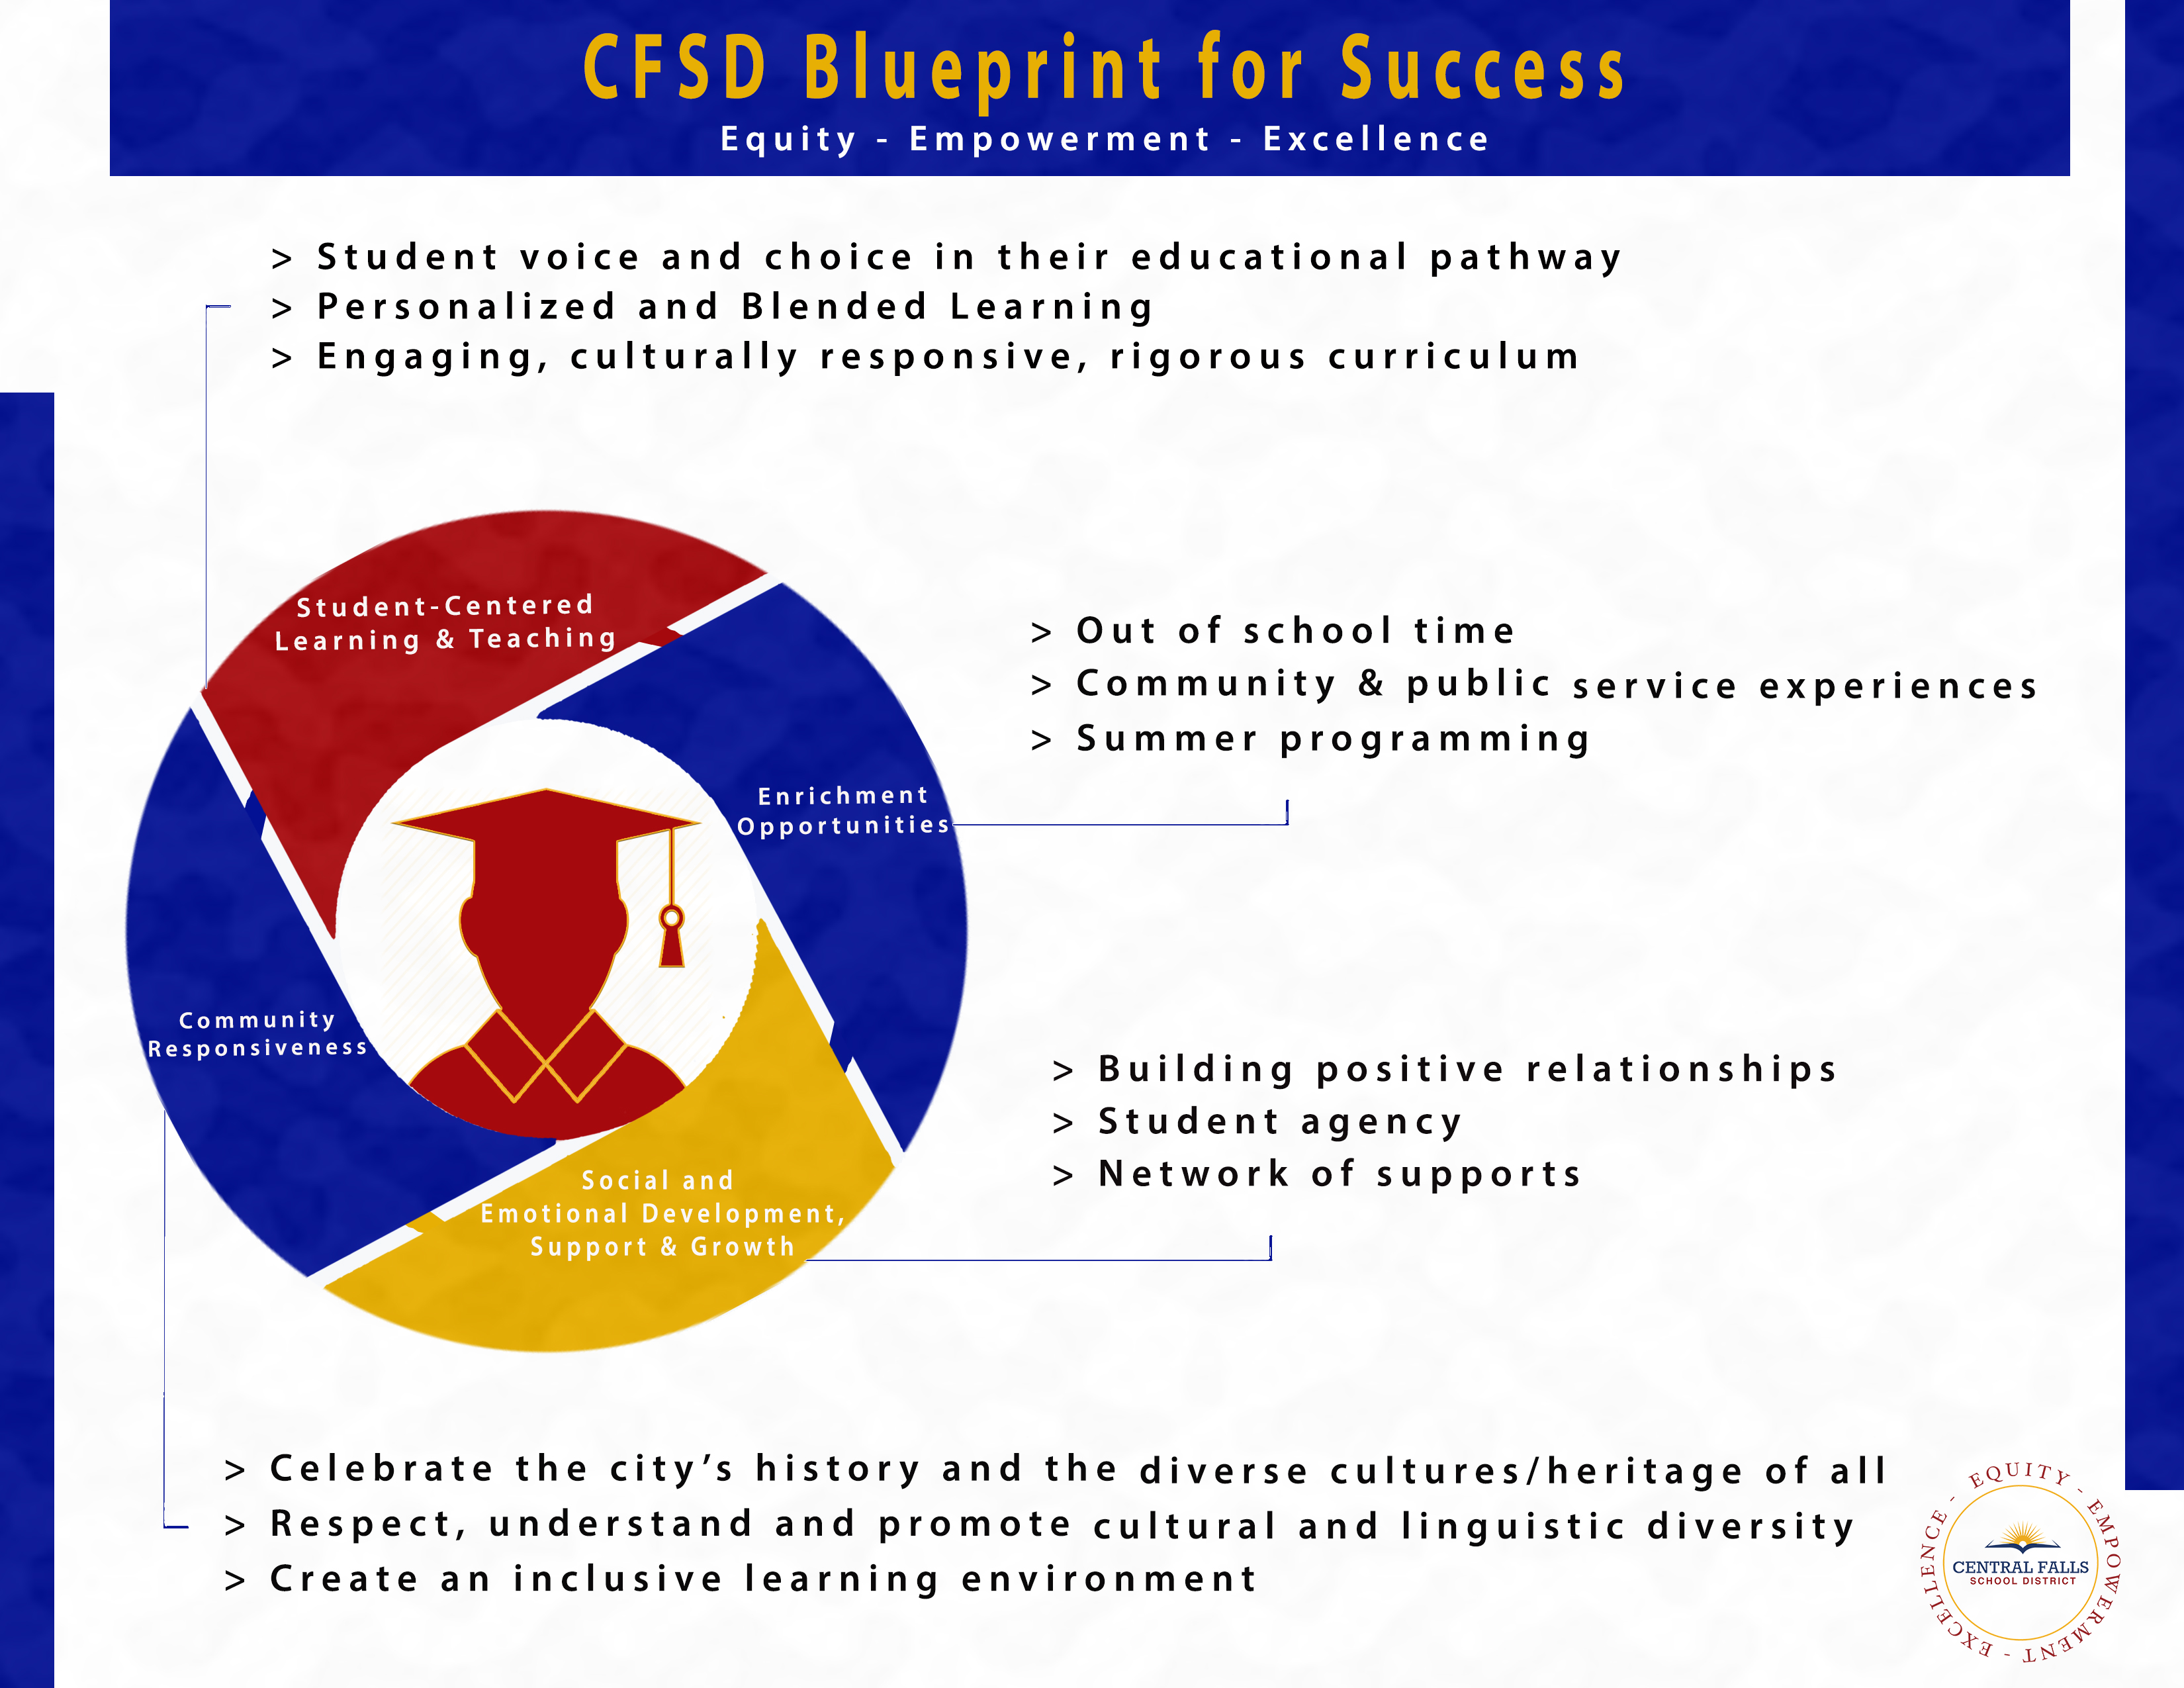 CFSD BLUEPRINT FOR SUCCESS INFO